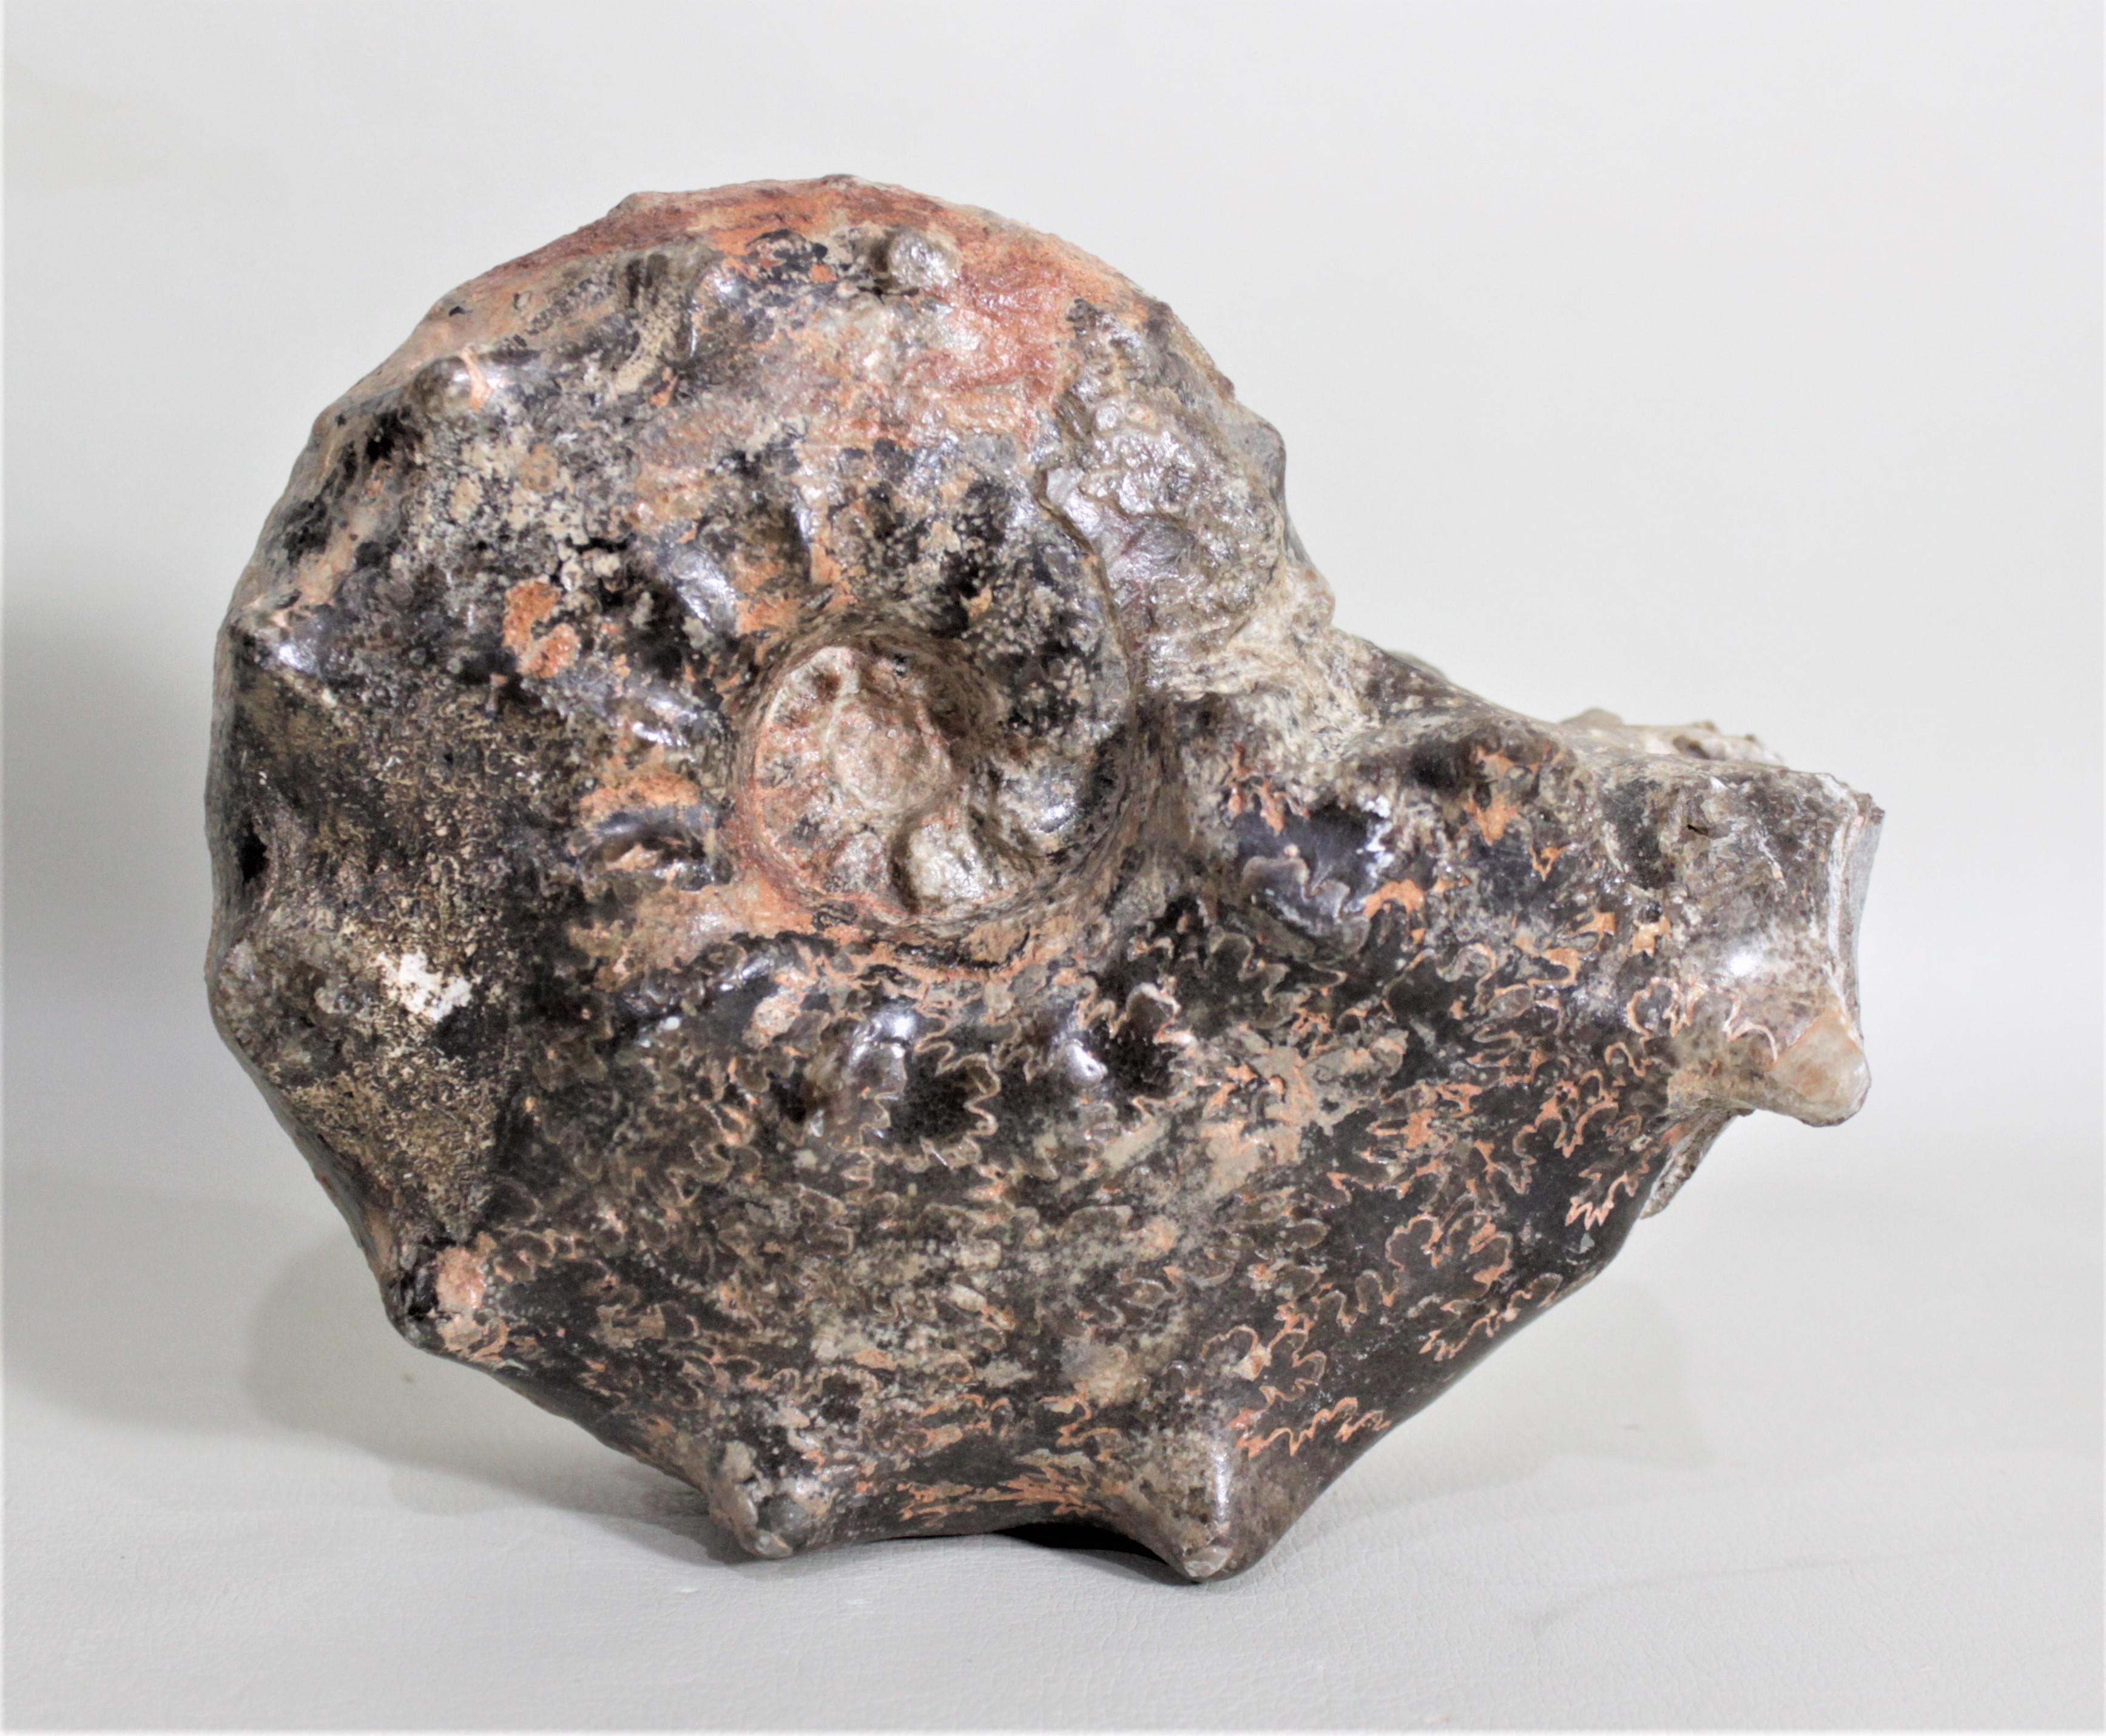 Dieser prähistorische, versteinerte Ammonit stammt wahrscheinlich aus Madagaskar und ist Tausende von Jahren alt. Dieses Fossil ist freistehend und kann als einzigartiges Designelement in Form einer Skulptur aus Naturmaterial oder als